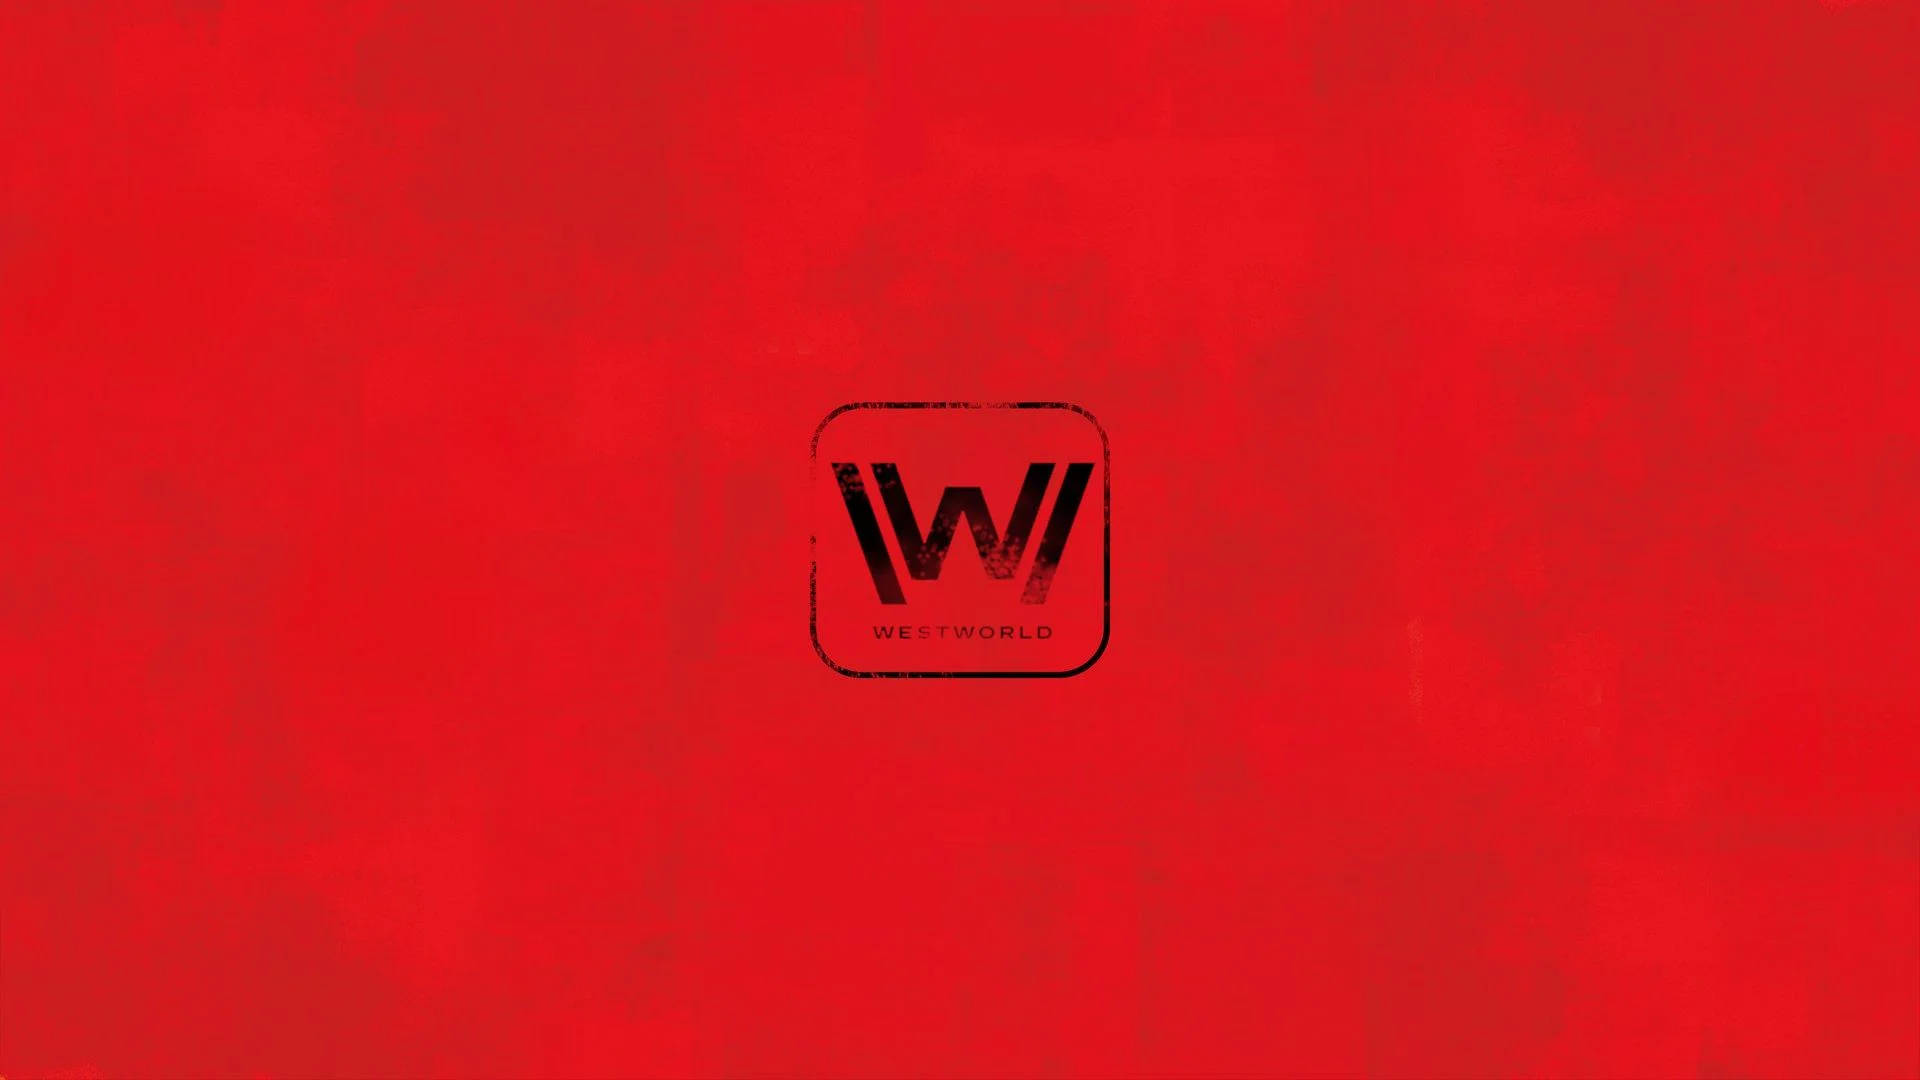 Schwarzeswestworld-logo In Rot. Wallpaper